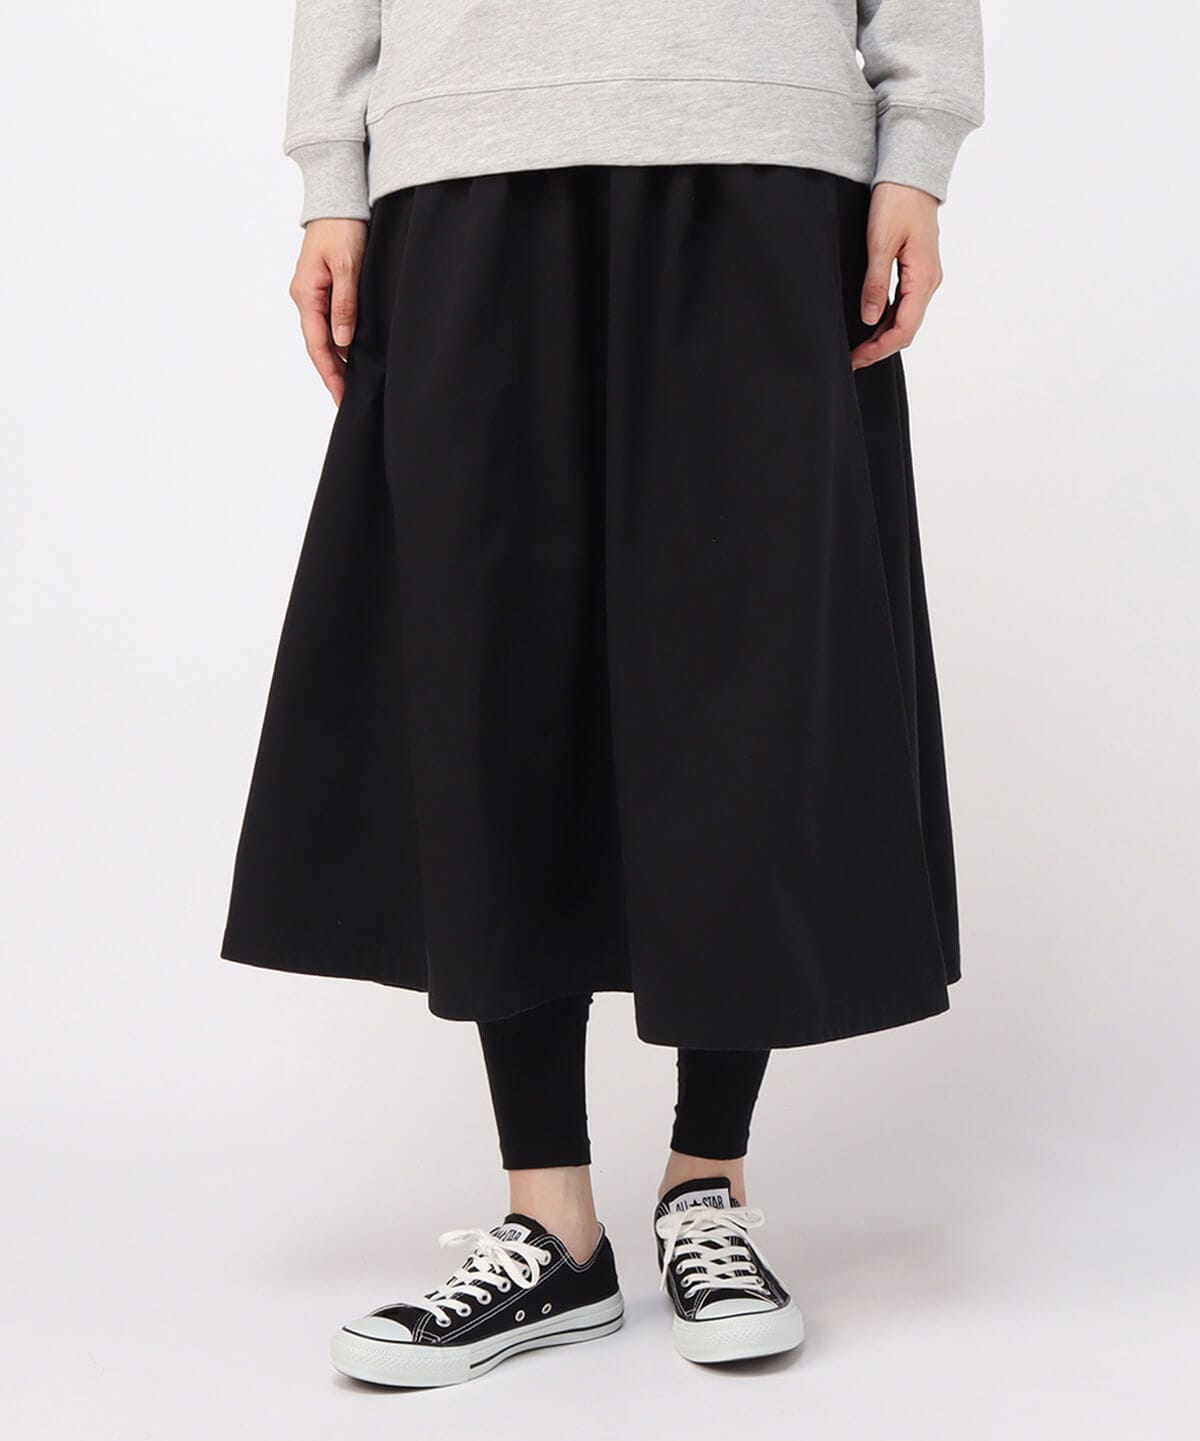 Two Tuck Wide Skirt TC(ツータックワイドスカートTC(スカート｜ボトムス))